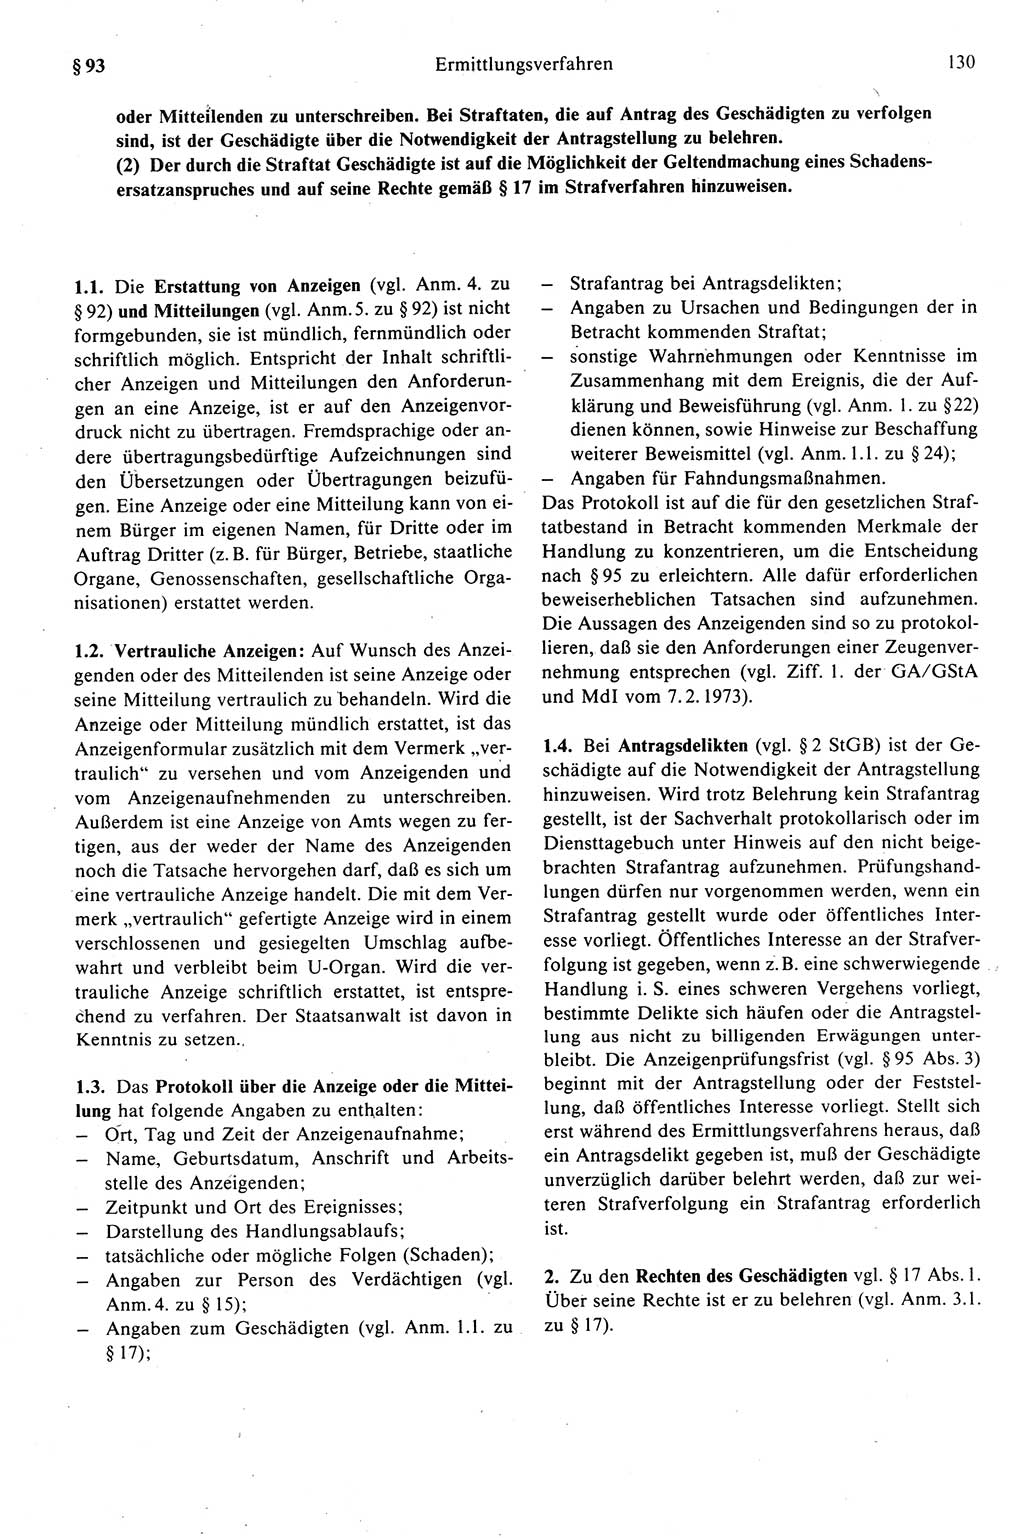 Strafprozeßrecht der DDR (Deutsche Demokratische Republik), Kommentar zur Strafprozeßordnung (StPO) 1989, Seite 130 (Strafprozeßr. DDR Komm. StPO 1989, S. 130)